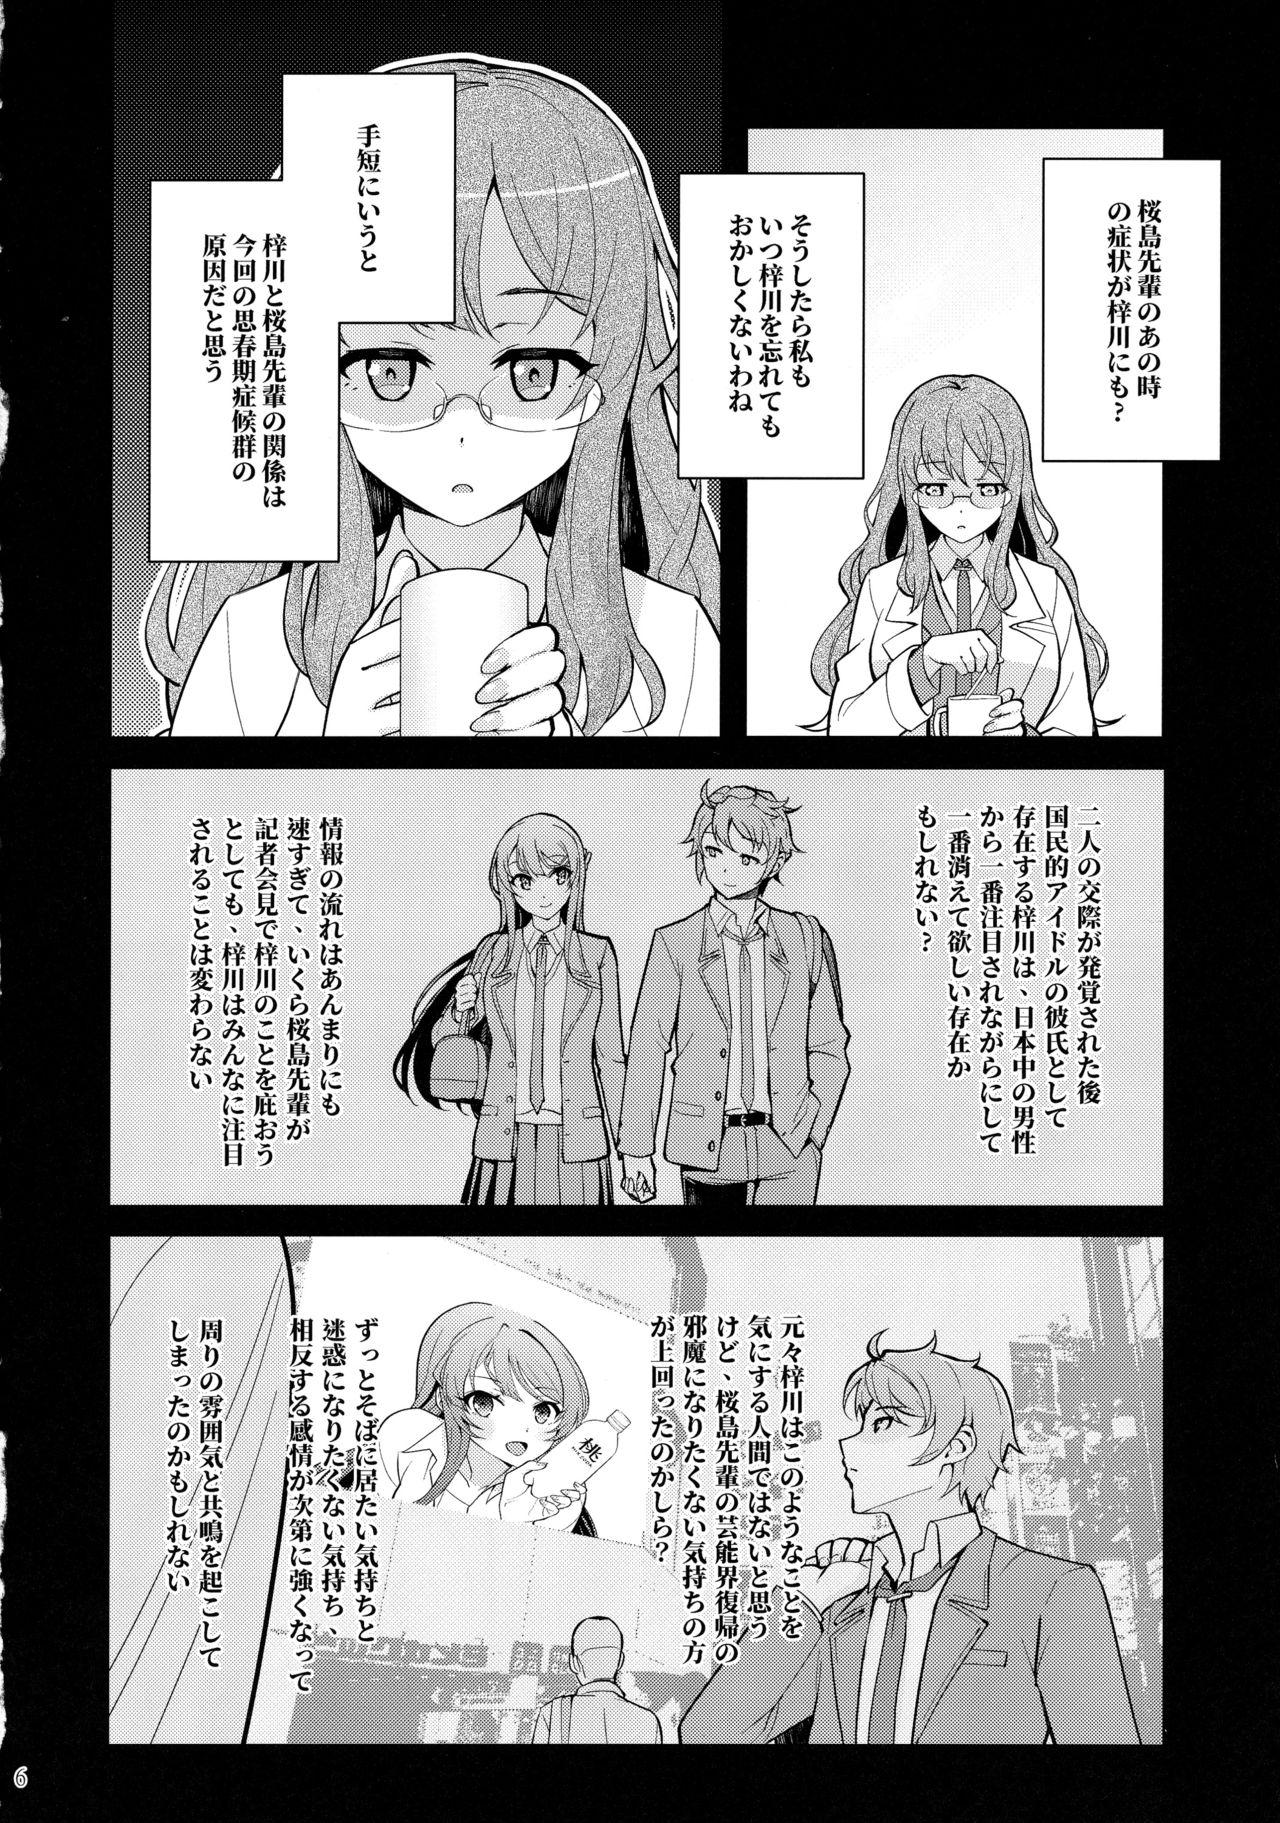 Licking Bunny Lovers - Seishun buta yarou wa bunny girl senpai no yume o minai Cornudo - Page 7